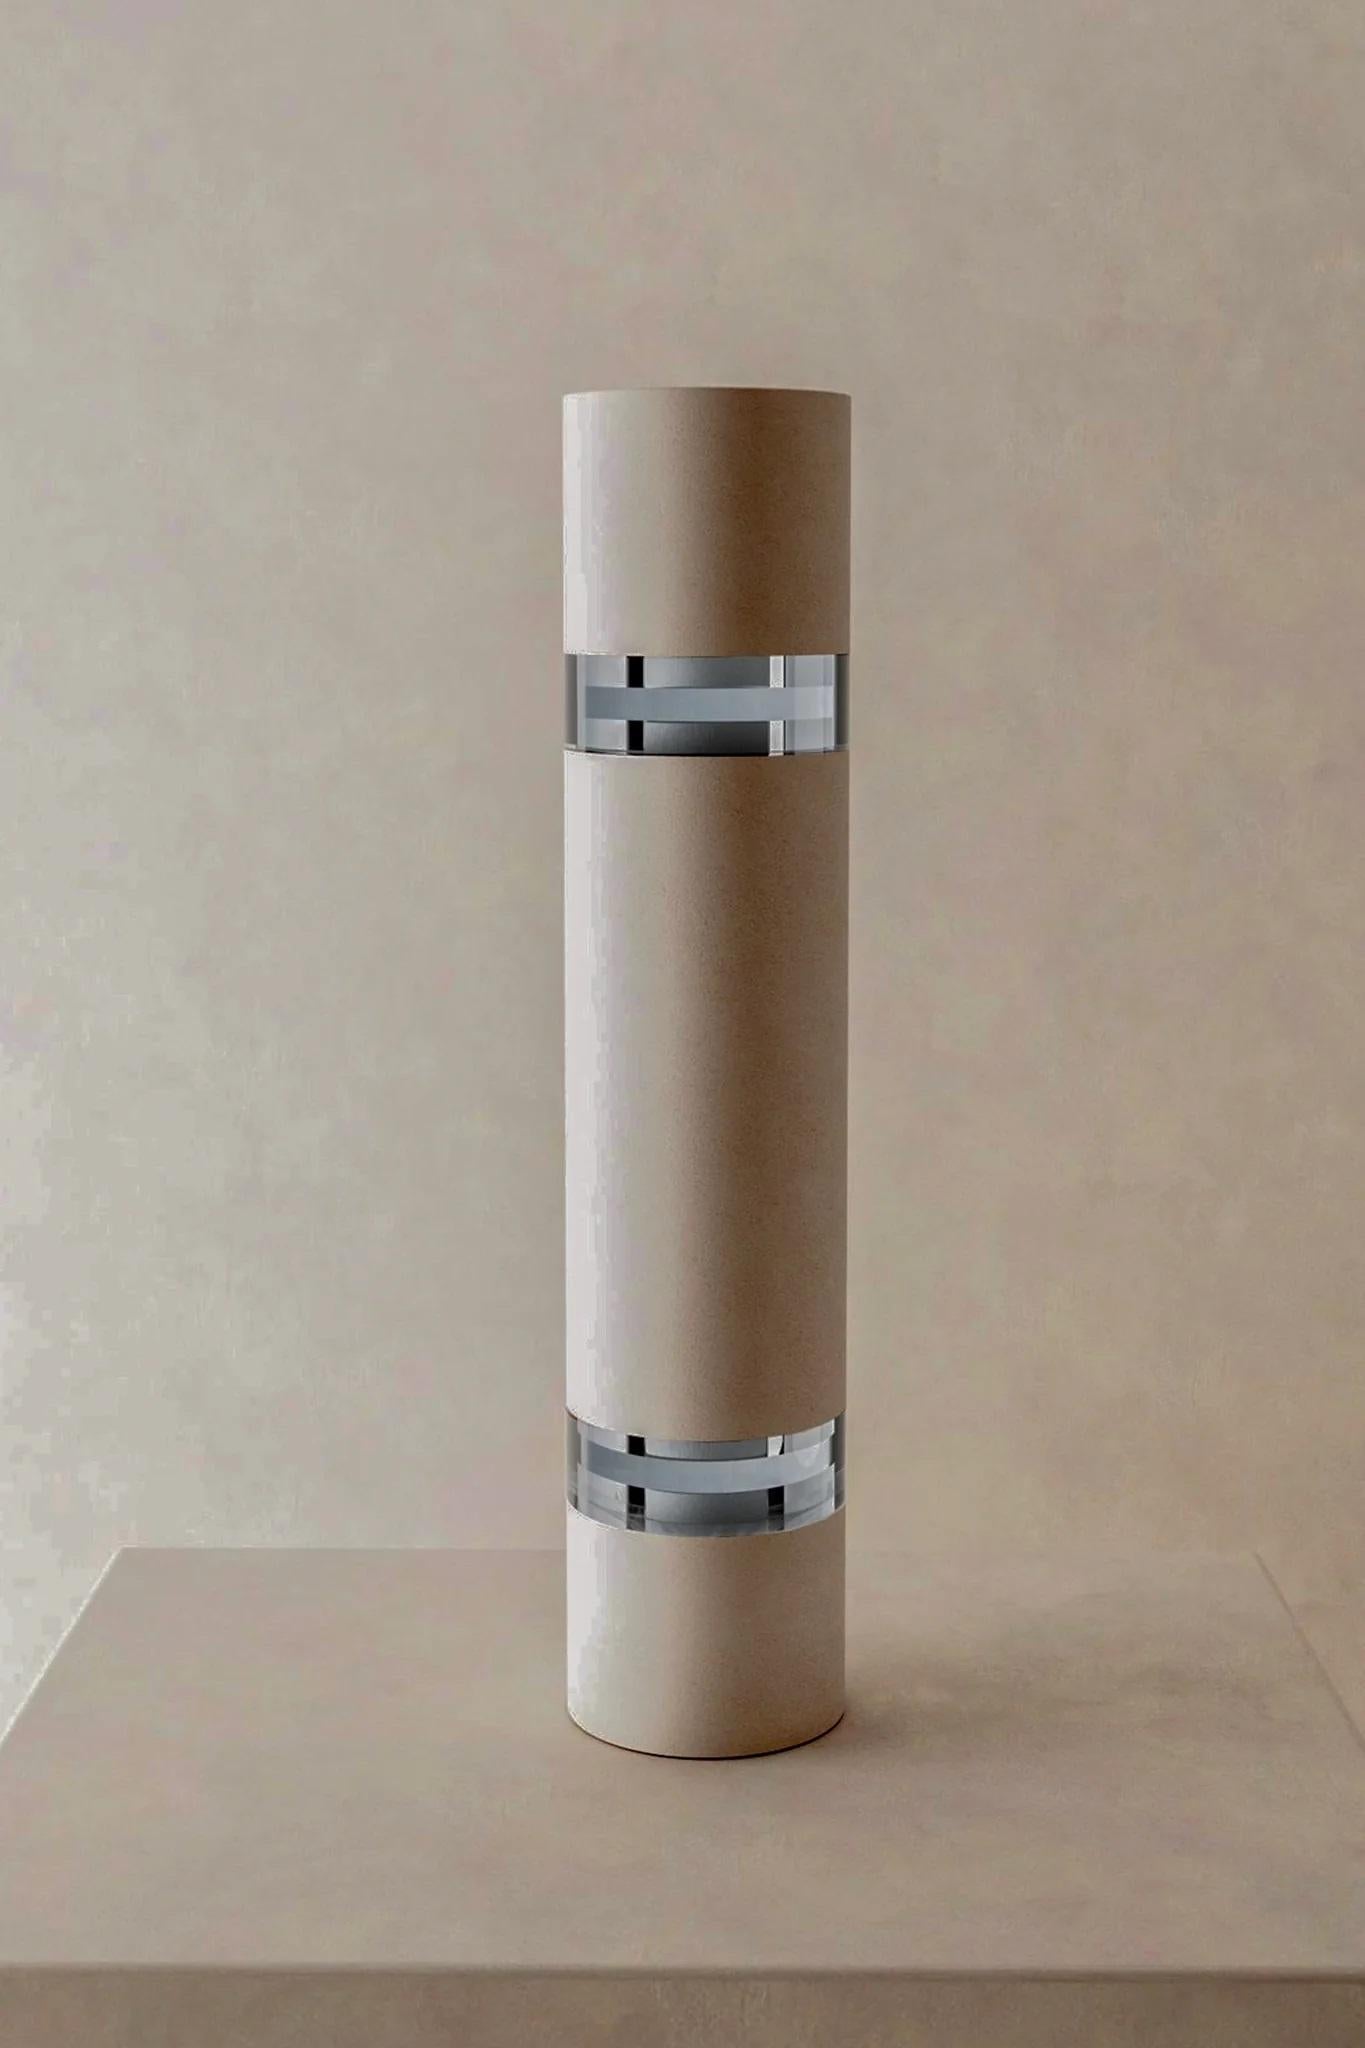 Vano Modell 4 Rosa Objekt von Eter Design
Einzigartiges Stück.
Abmessungen: Ø 11,4 x H 53,4 cm.
MATERIALIEN: Lehm.

Nachhaltig - umweltfreundlich. Handgefertigt. Jedes Stück kann in Farbe, Größe, Textur und Form leicht variieren. Auch in blau